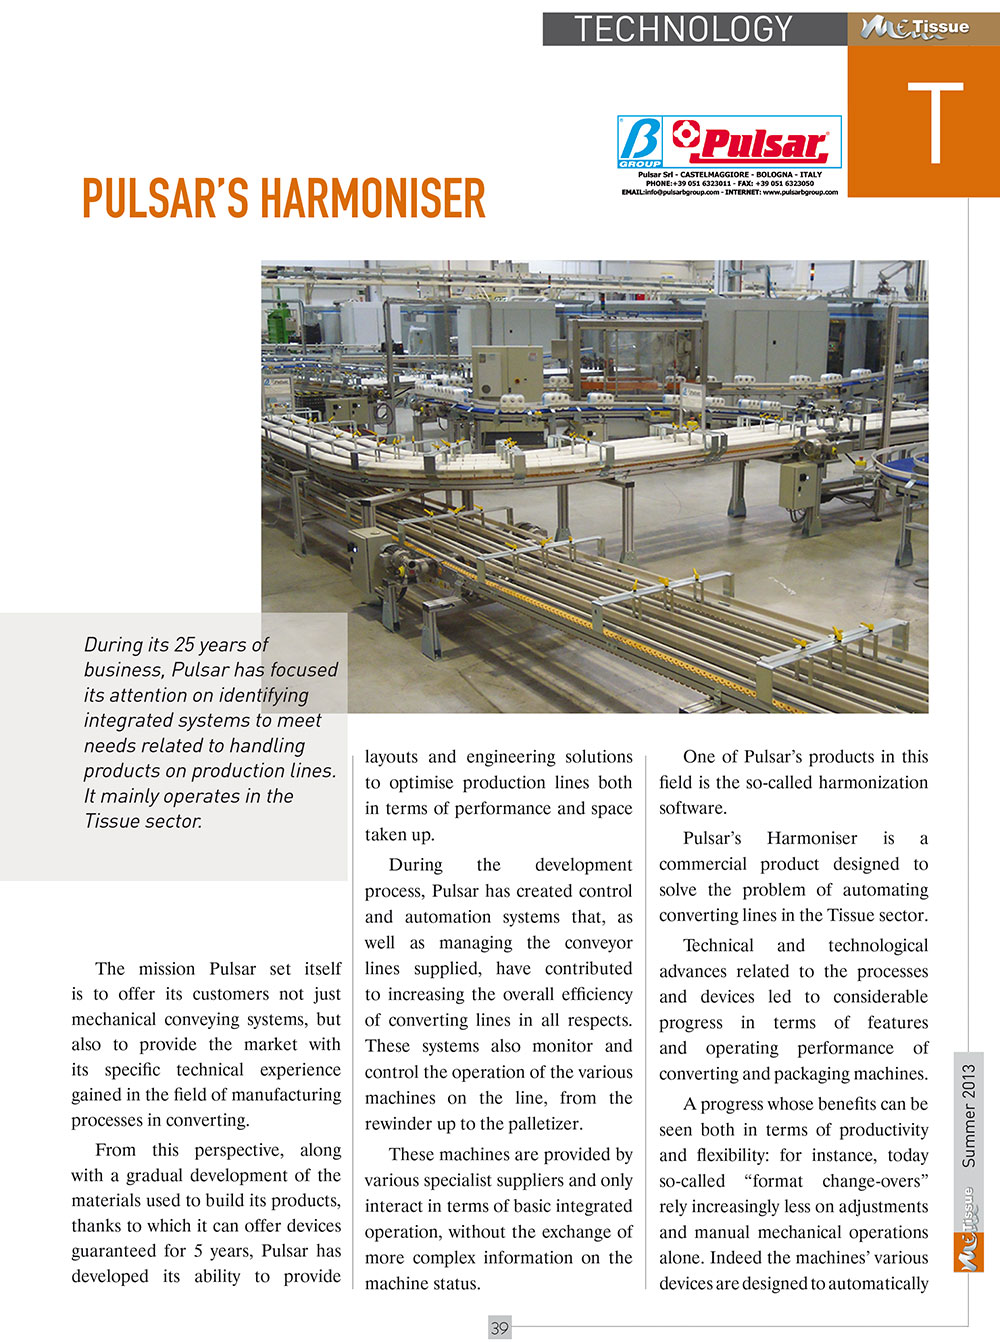 Pulsar-article-armonizzatore-1